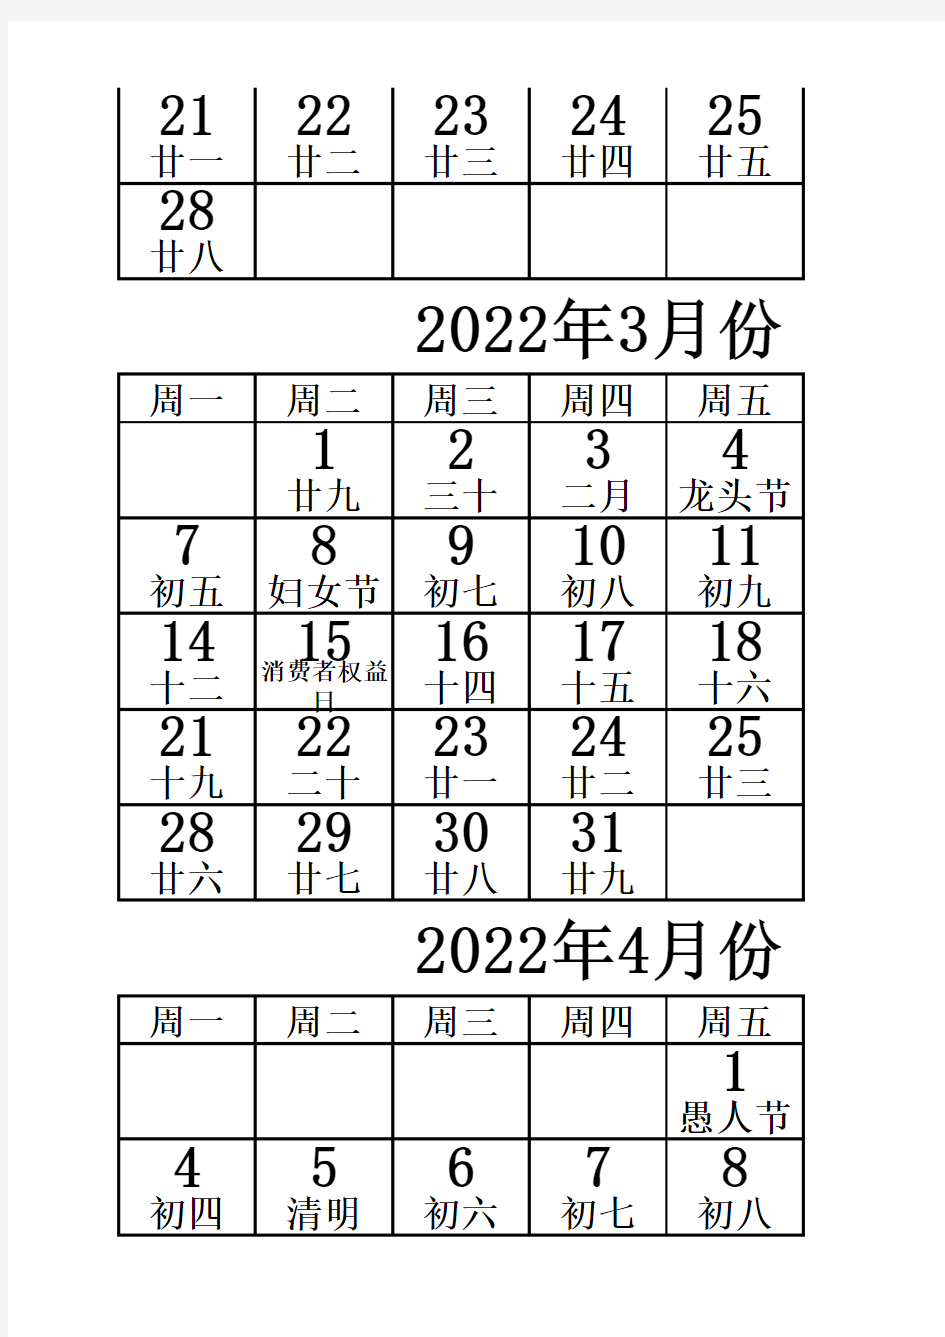 2022年日历表(含农历)